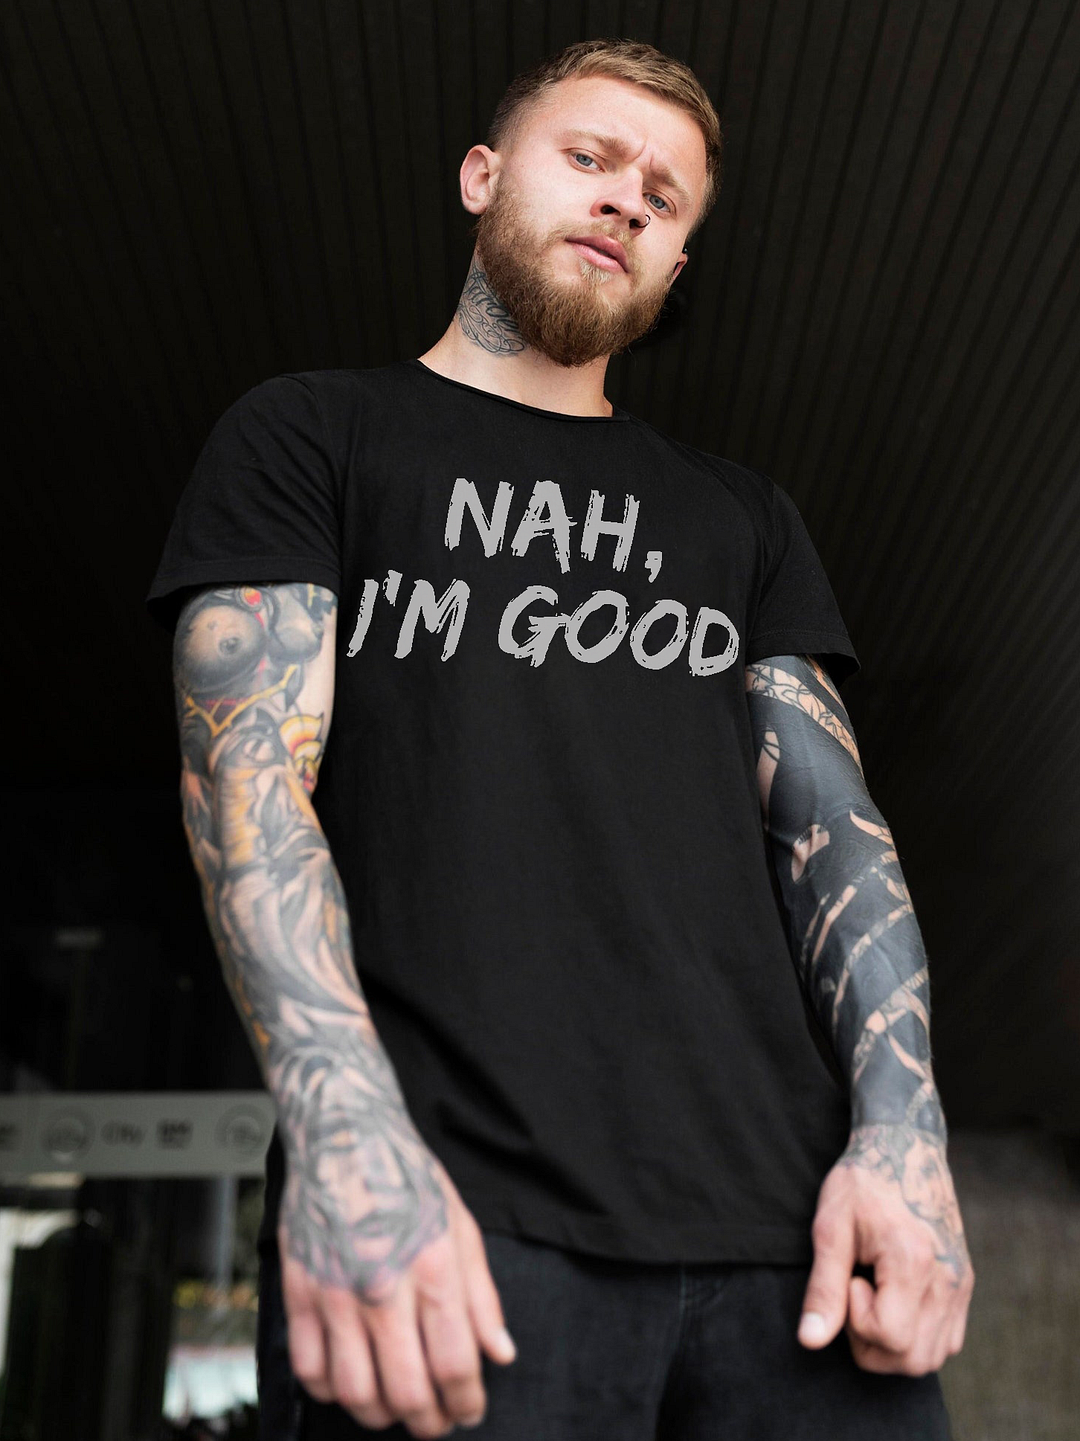 Nah, I'm Good Letters Print Men's Short Sleeve T-shirt - Krazyskull